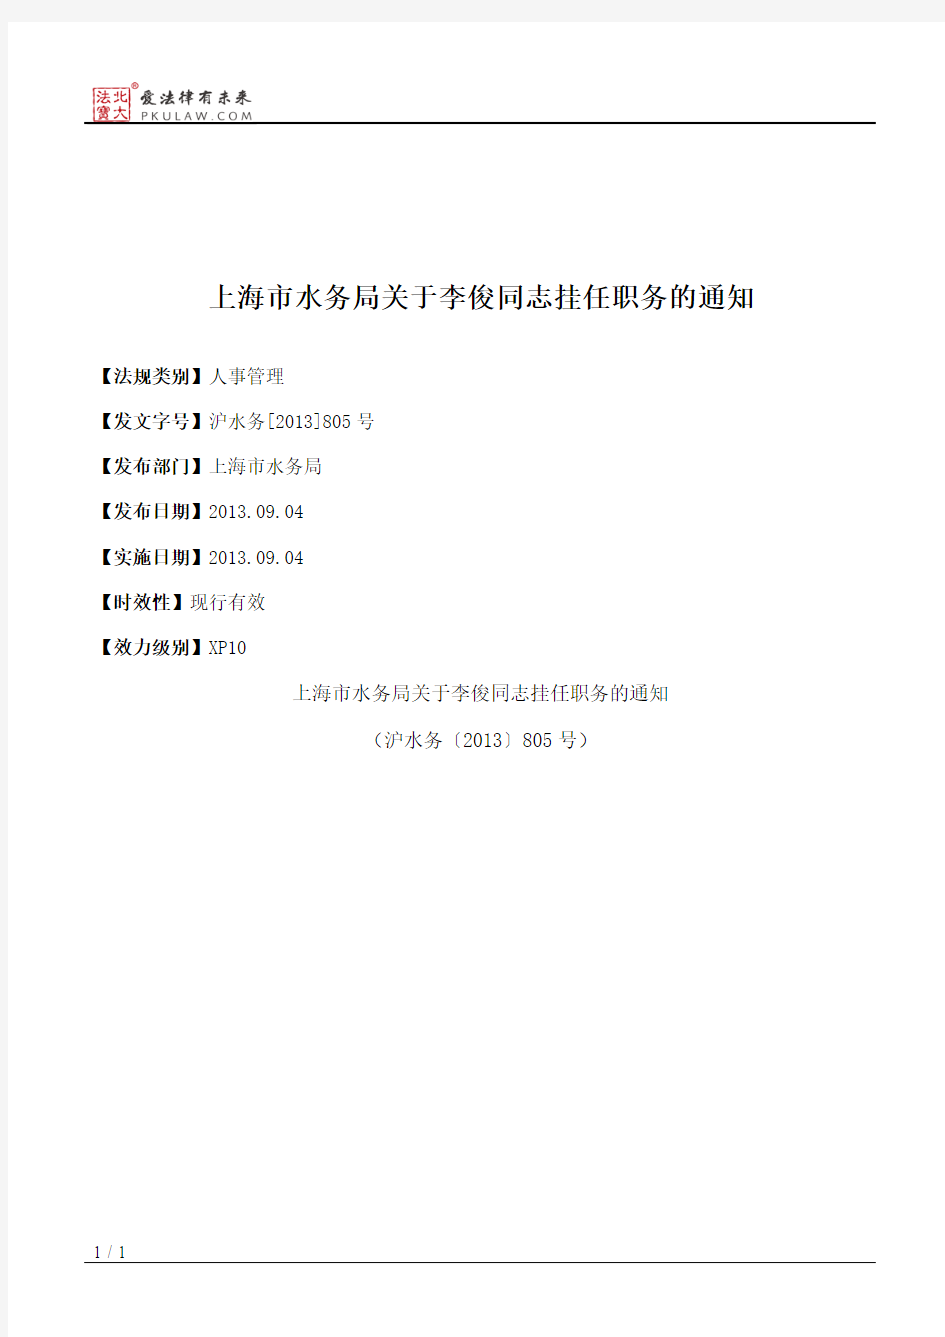 上海市水务局关于李俊同志挂任职务的通知